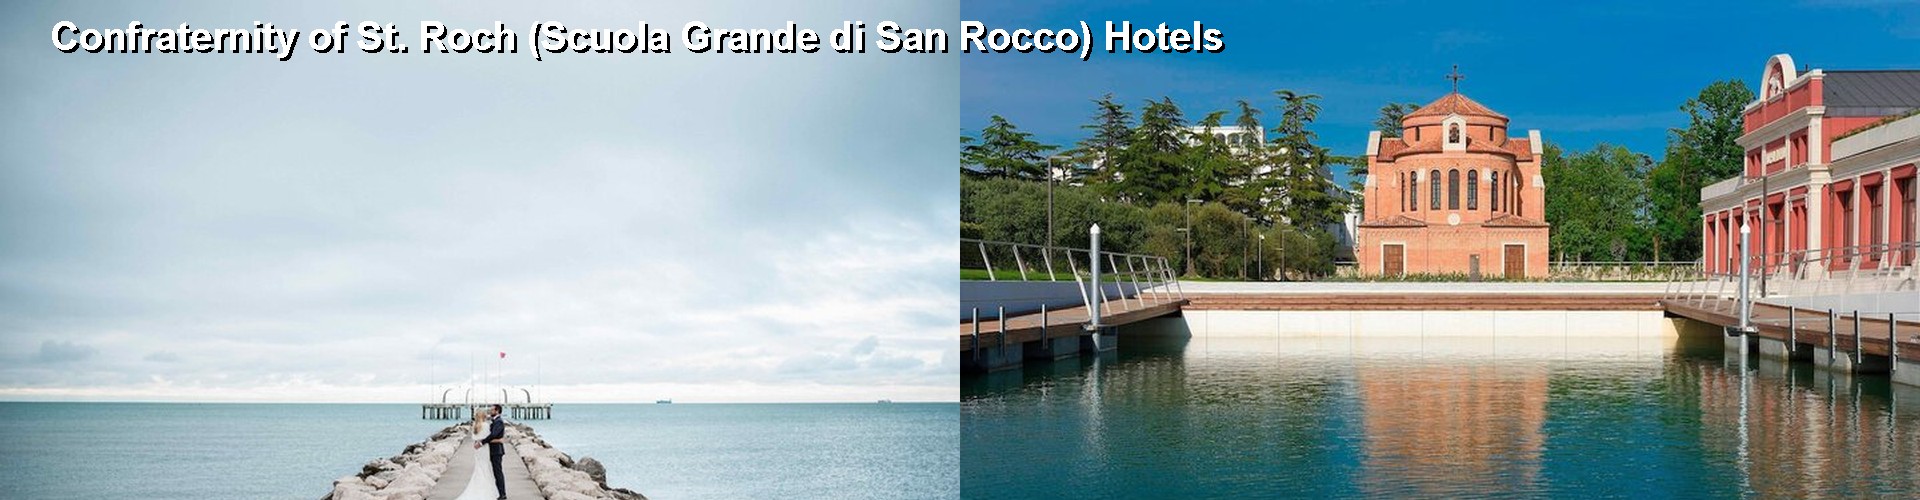 5 Best Hotels near Confraternity of St. Roch (Scuola Grande di San Rocco)